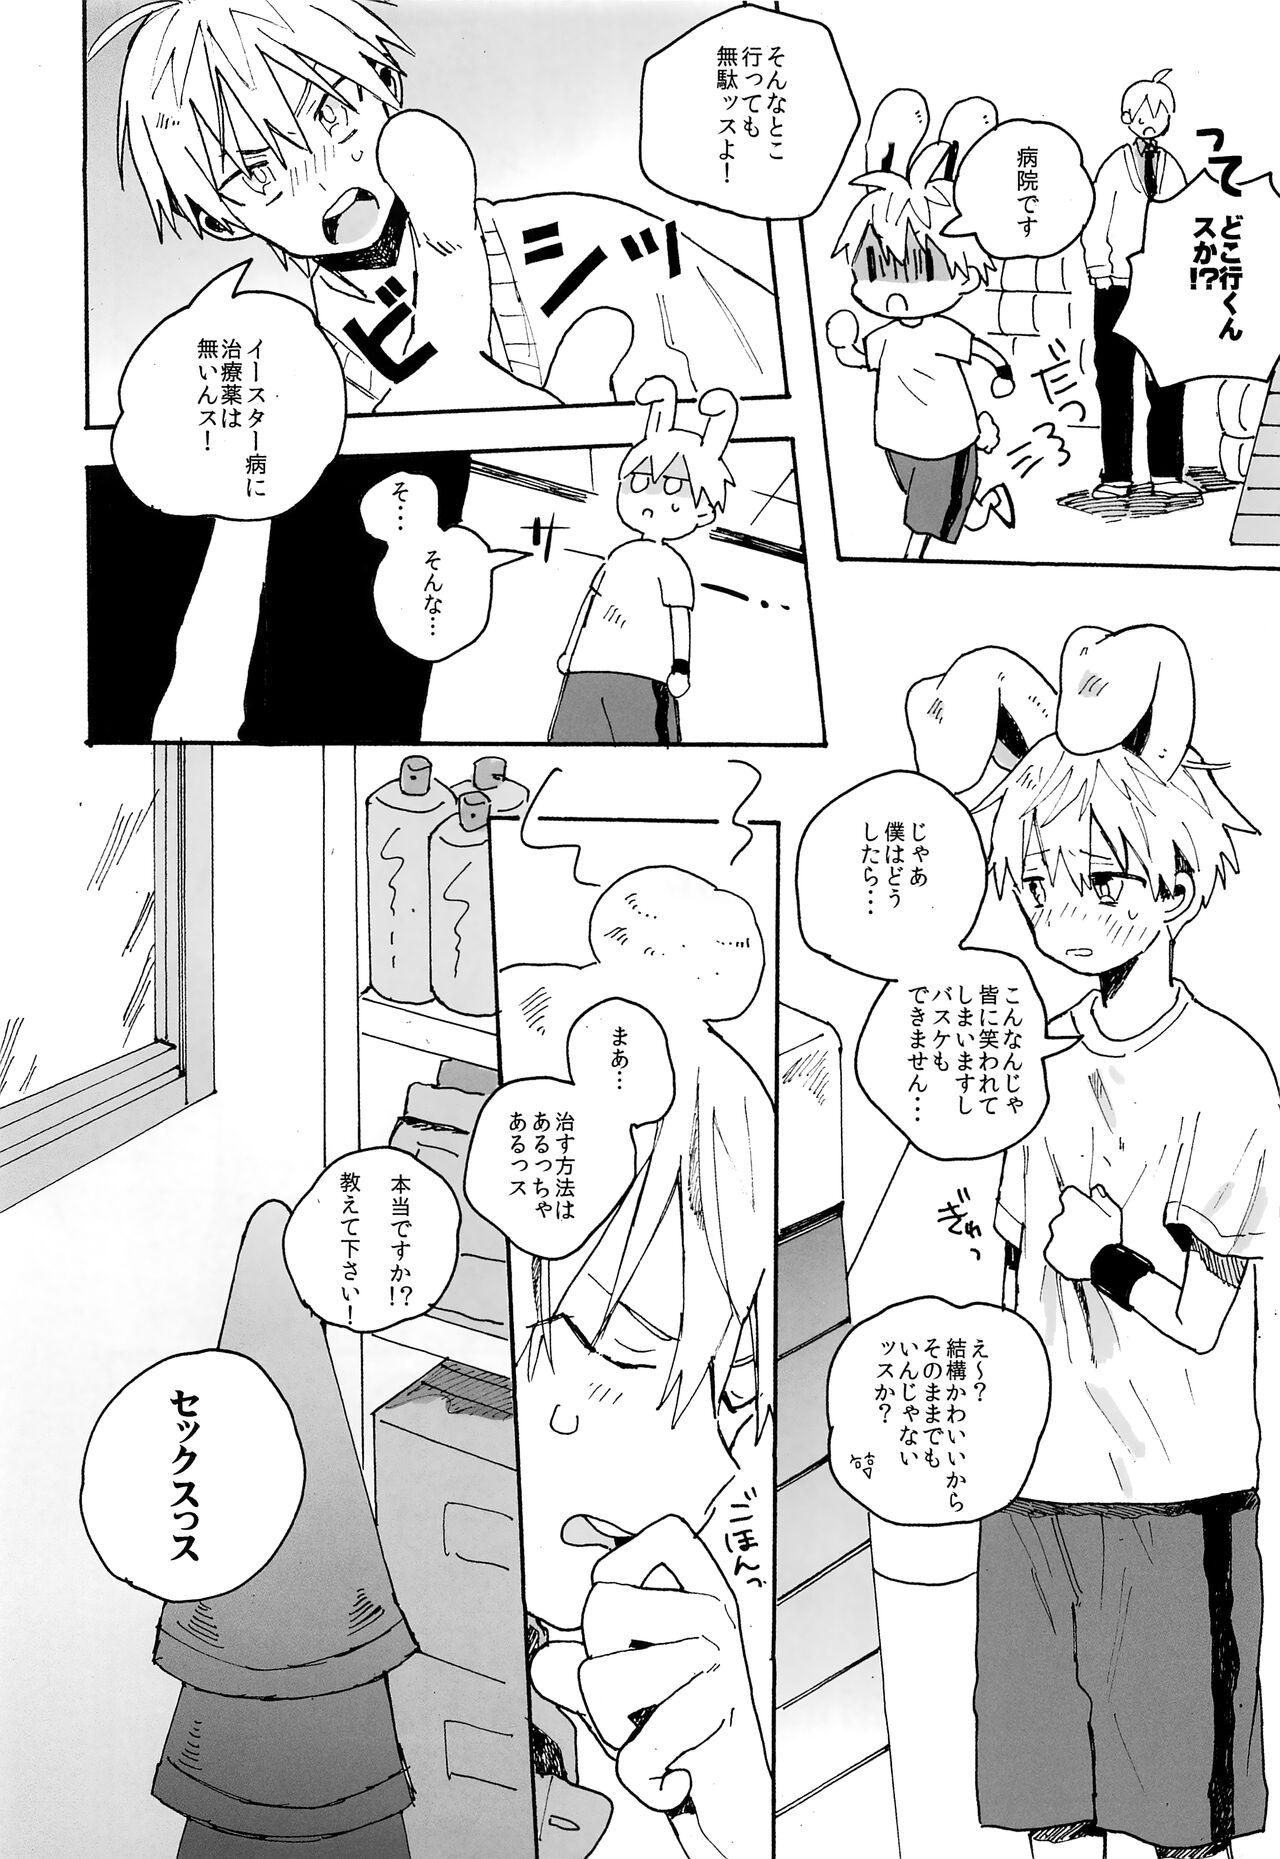 Dancing my cute baby bunny - Kuroko no basuke Young Men - Page 5